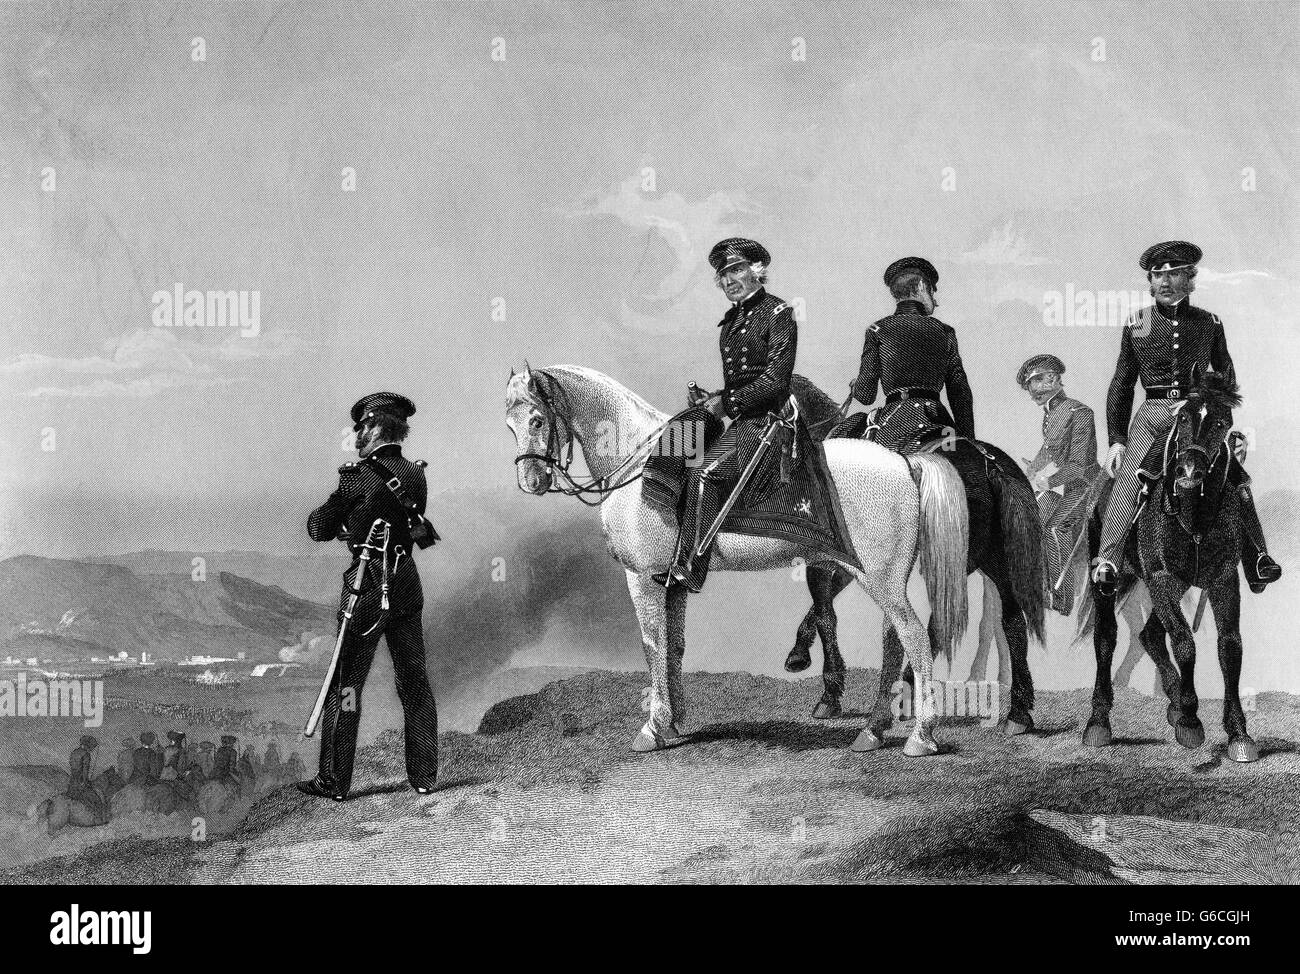 1840ER JAHRE GENERAL ZACHARY TAYLOR AUF PFERD MIT BLICK AUF SCHLACHTFELD SCHLACHT VON MONTERREY MEXIKANISCH-AMERIKANISCHEN KRIEG SEPTEMBER 1846 Stockfoto